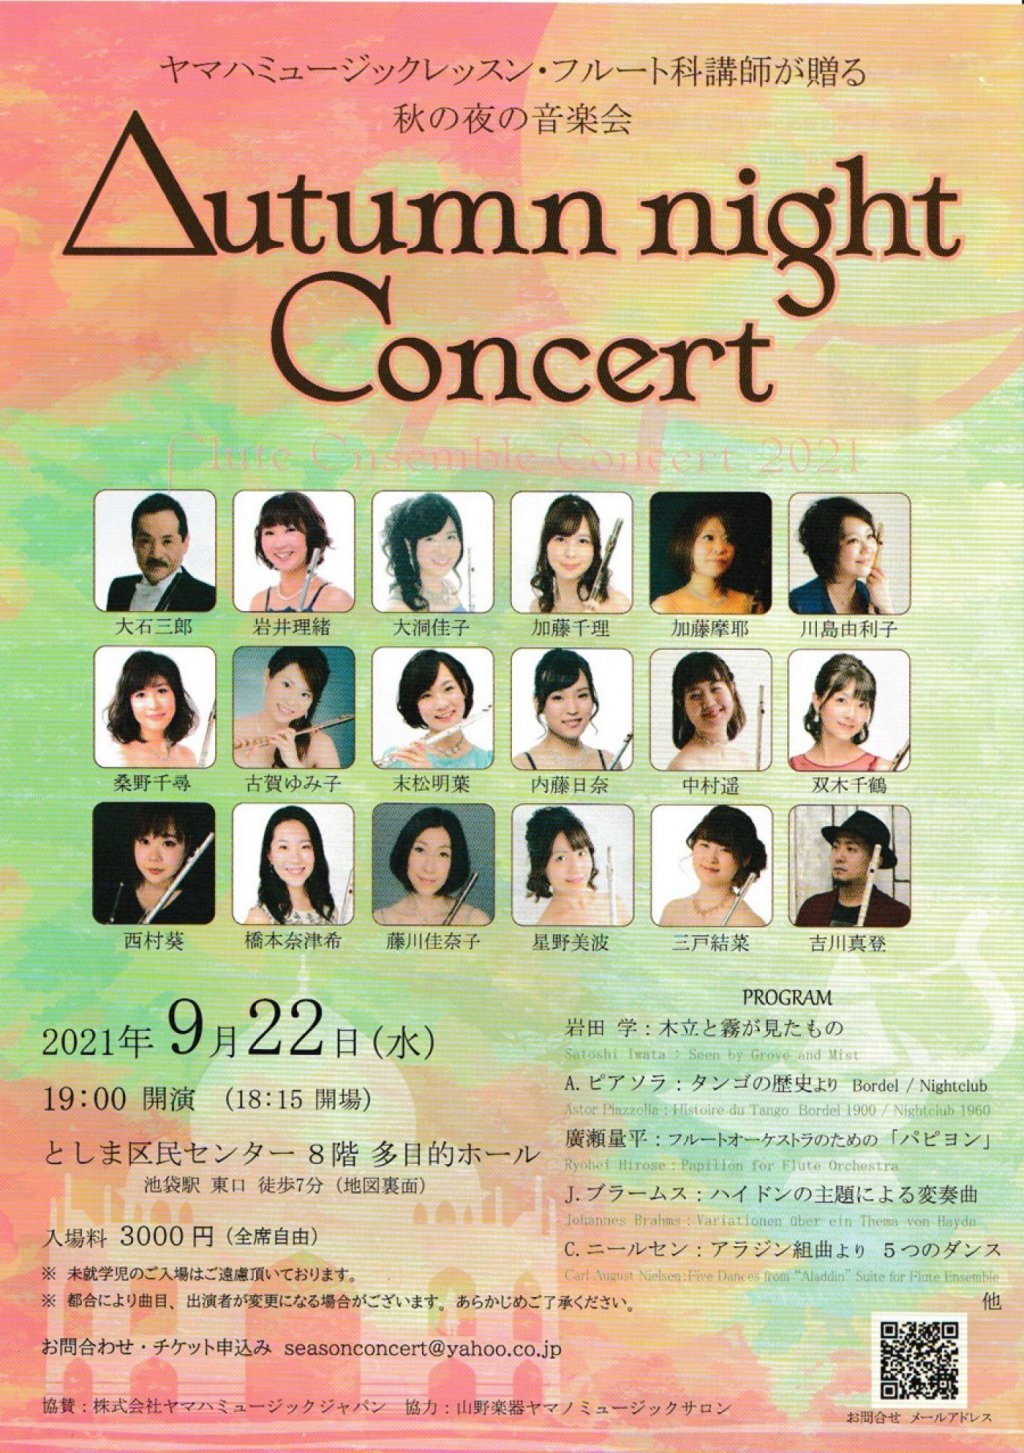 ヤマハミュージックレッスン・フルート科講師が贈る 秋の夜の音楽会 Autumn night Concert Flute Ensemble Concert 2021